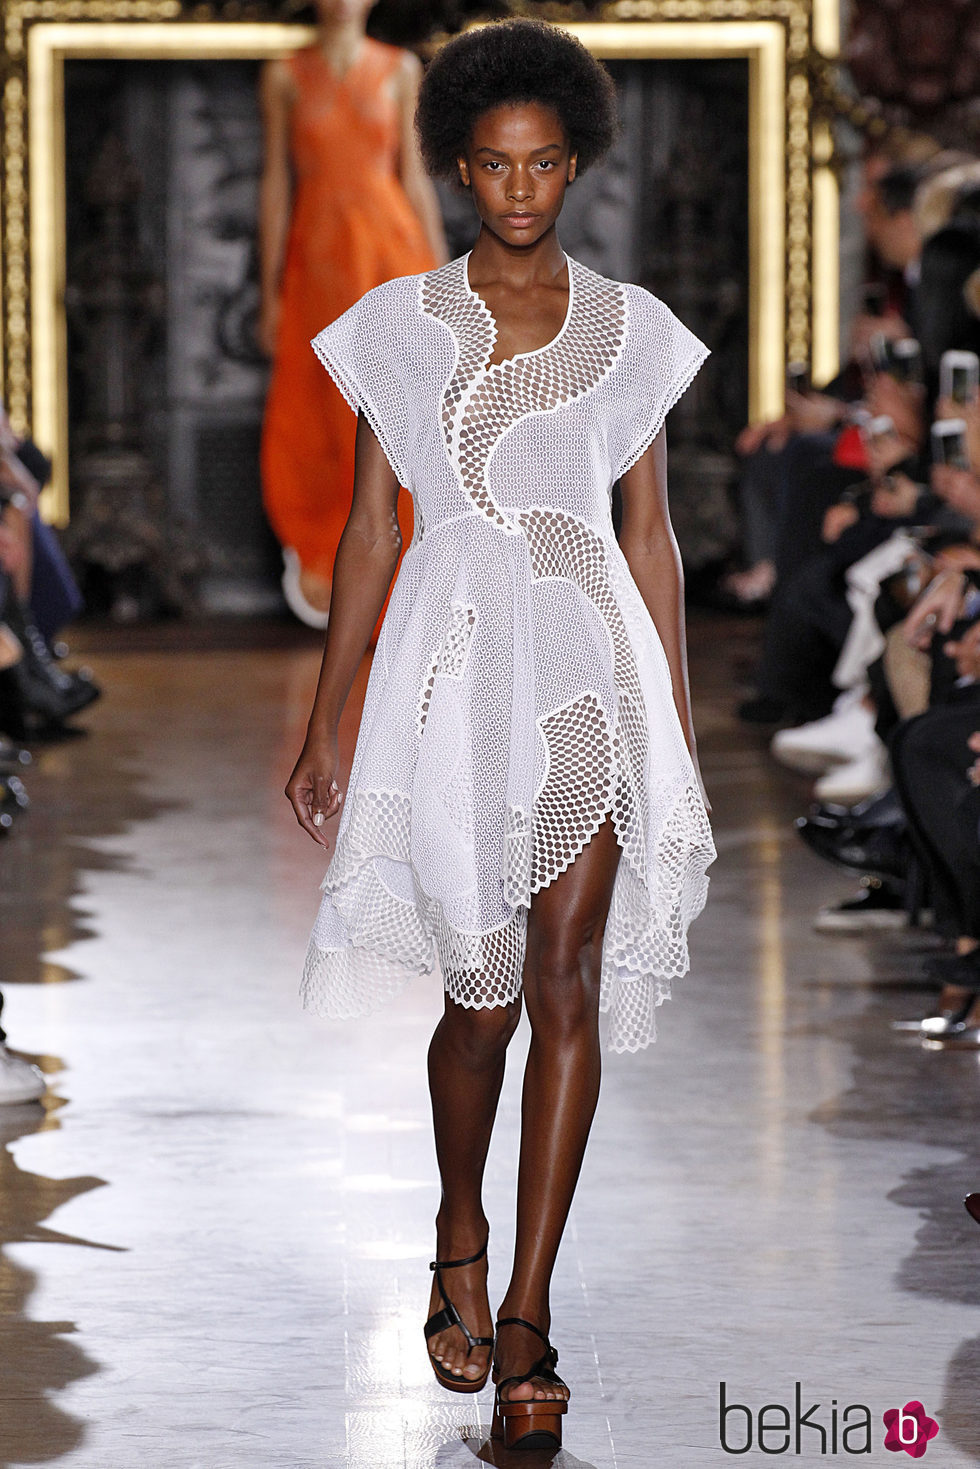 Vestido blanco asimétrico de la colección de primavera/verano 2016 de Stella McCartney en Paris Fashion Week